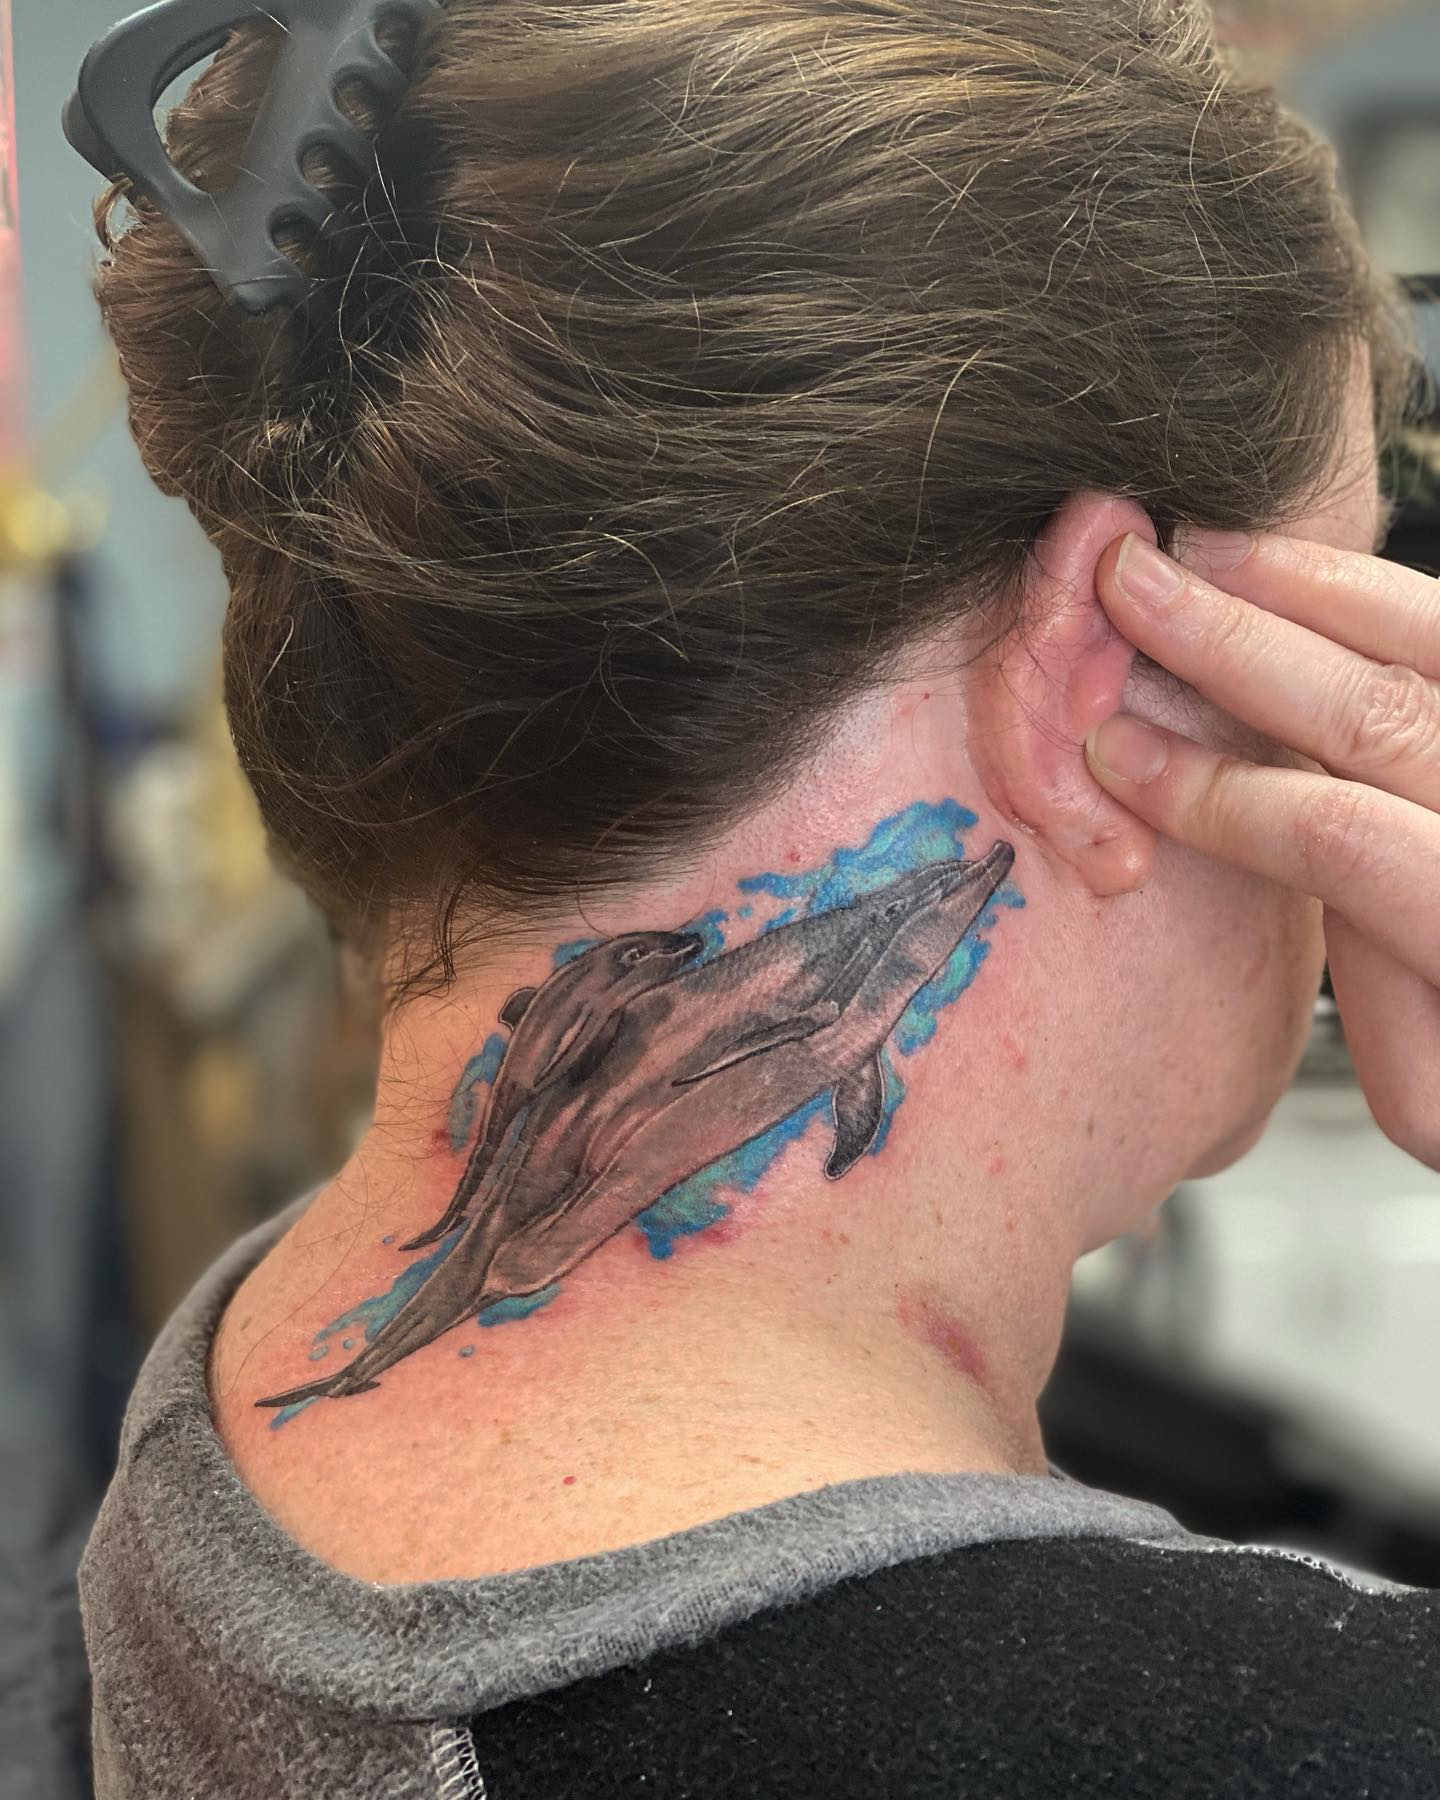 Diseño de tatuaje de ballena detrás de la oreja.